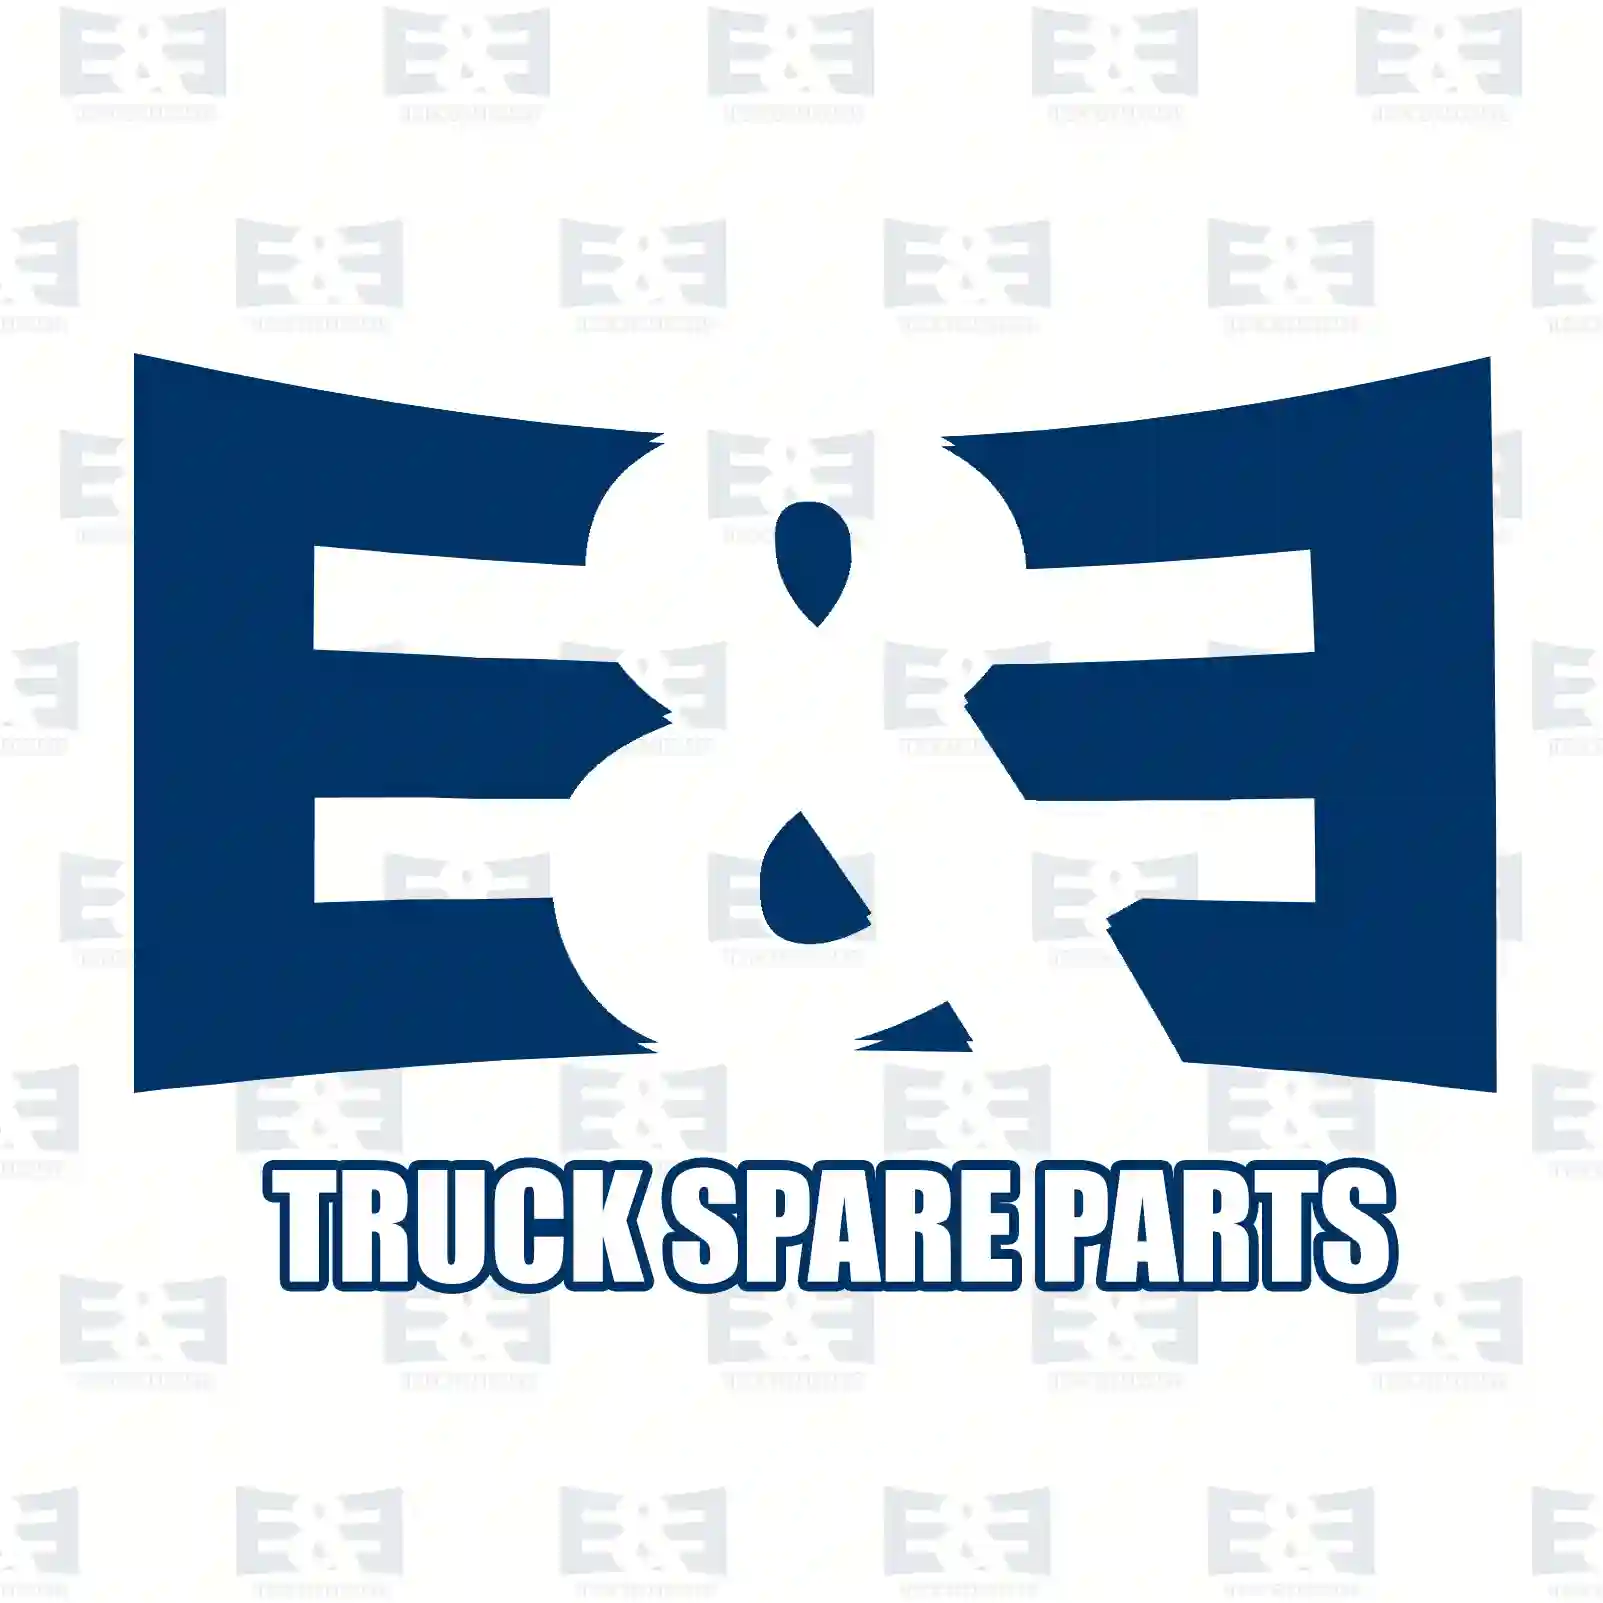 O-ring, 2E2285614, 7400975687, 925096, 975687, ZG02883-0008 ||  2E2285614 E&E Truck Spare Parts | Truck Spare Parts, Auotomotive Spare Parts O-ring, 2E2285614, 7400975687, 925096, 975687, ZG02883-0008 ||  2E2285614 E&E Truck Spare Parts | Truck Spare Parts, Auotomotive Spare Parts